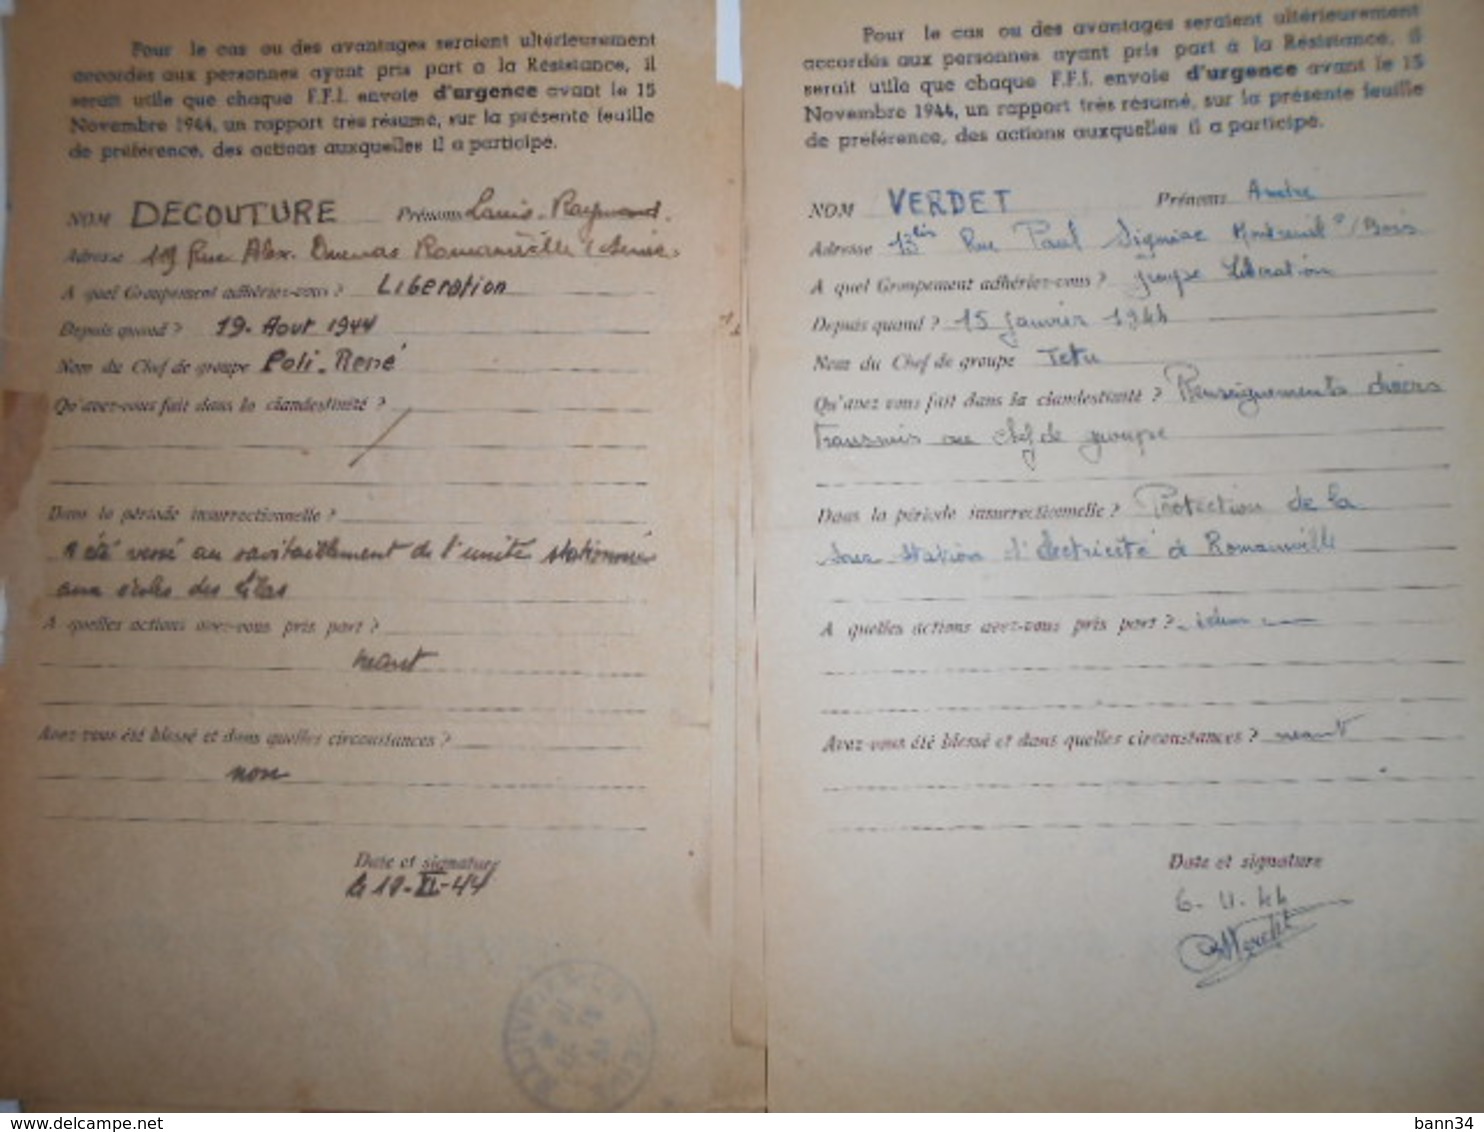 lot de 6 courriers FM liberation paris 1944 franchise militaire ffi ftp resistance romainville